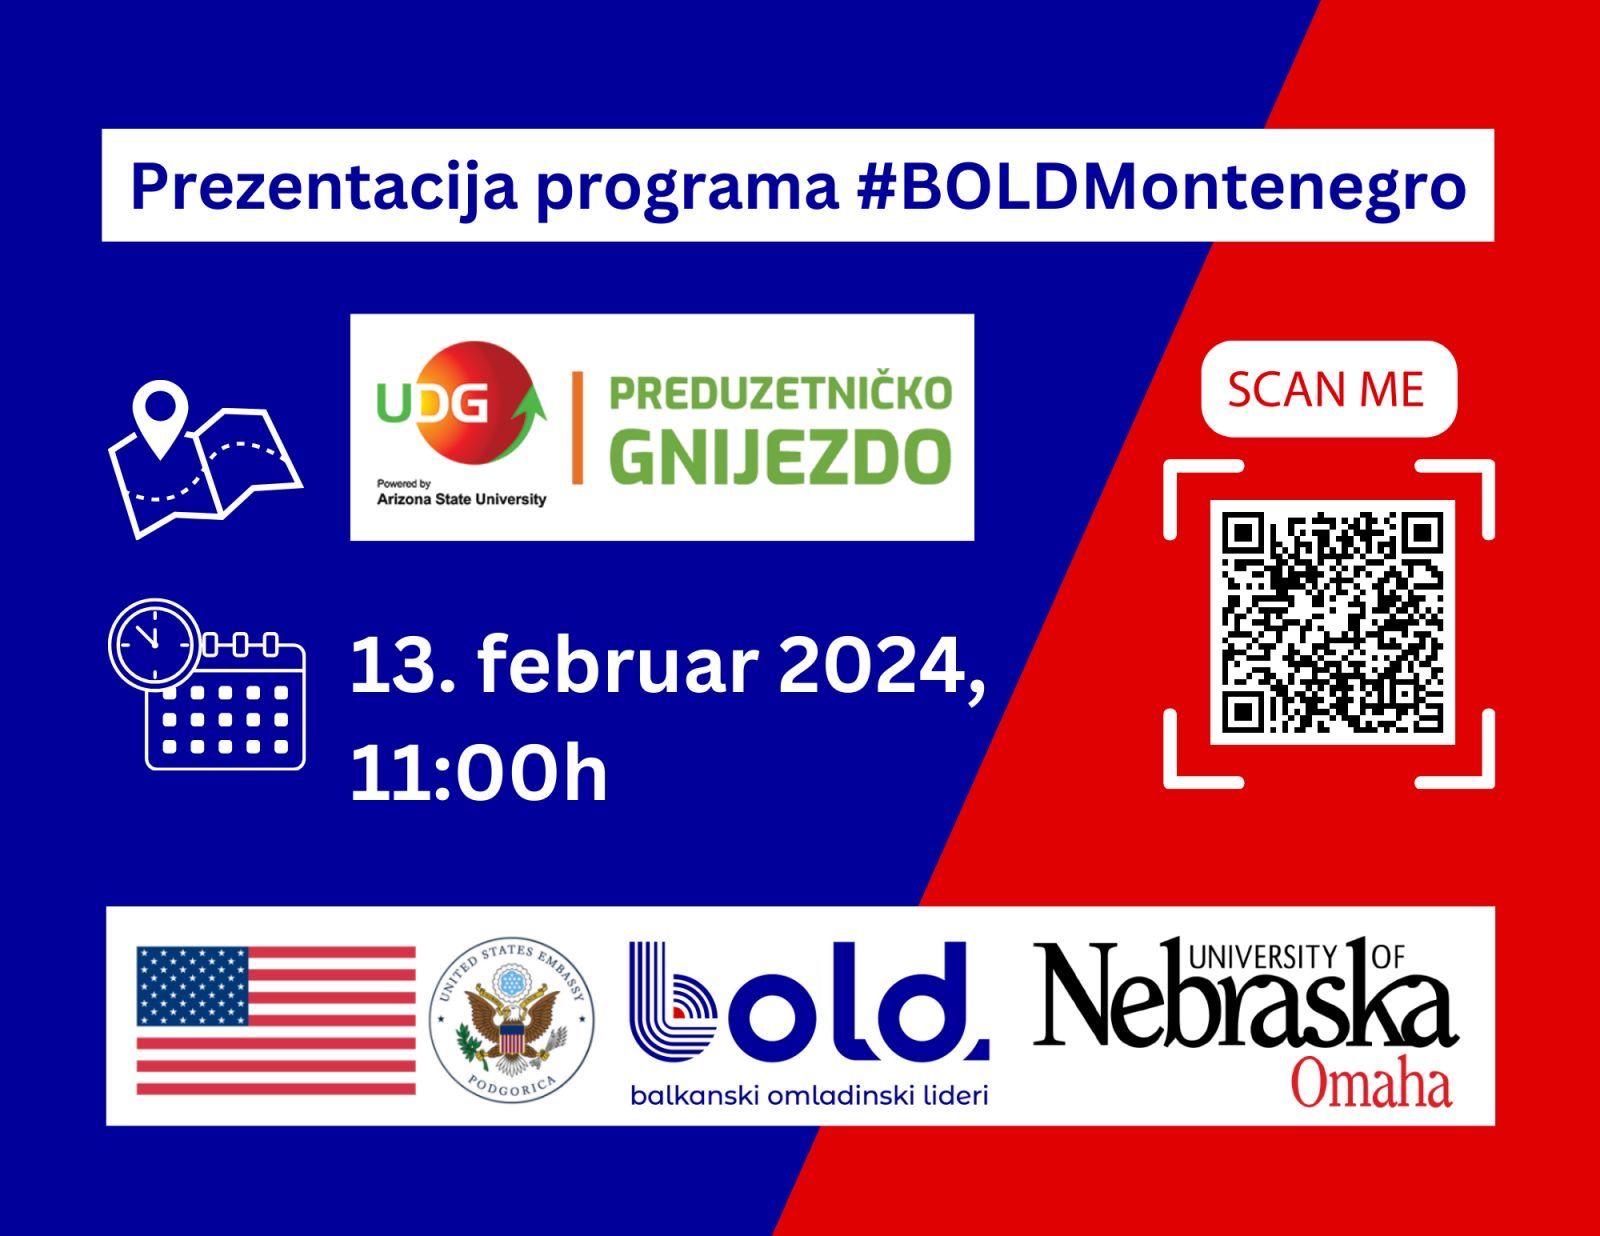 Prezentacija programa BOLD Montenegro u Preduzetničkom gnijezdu, UDG